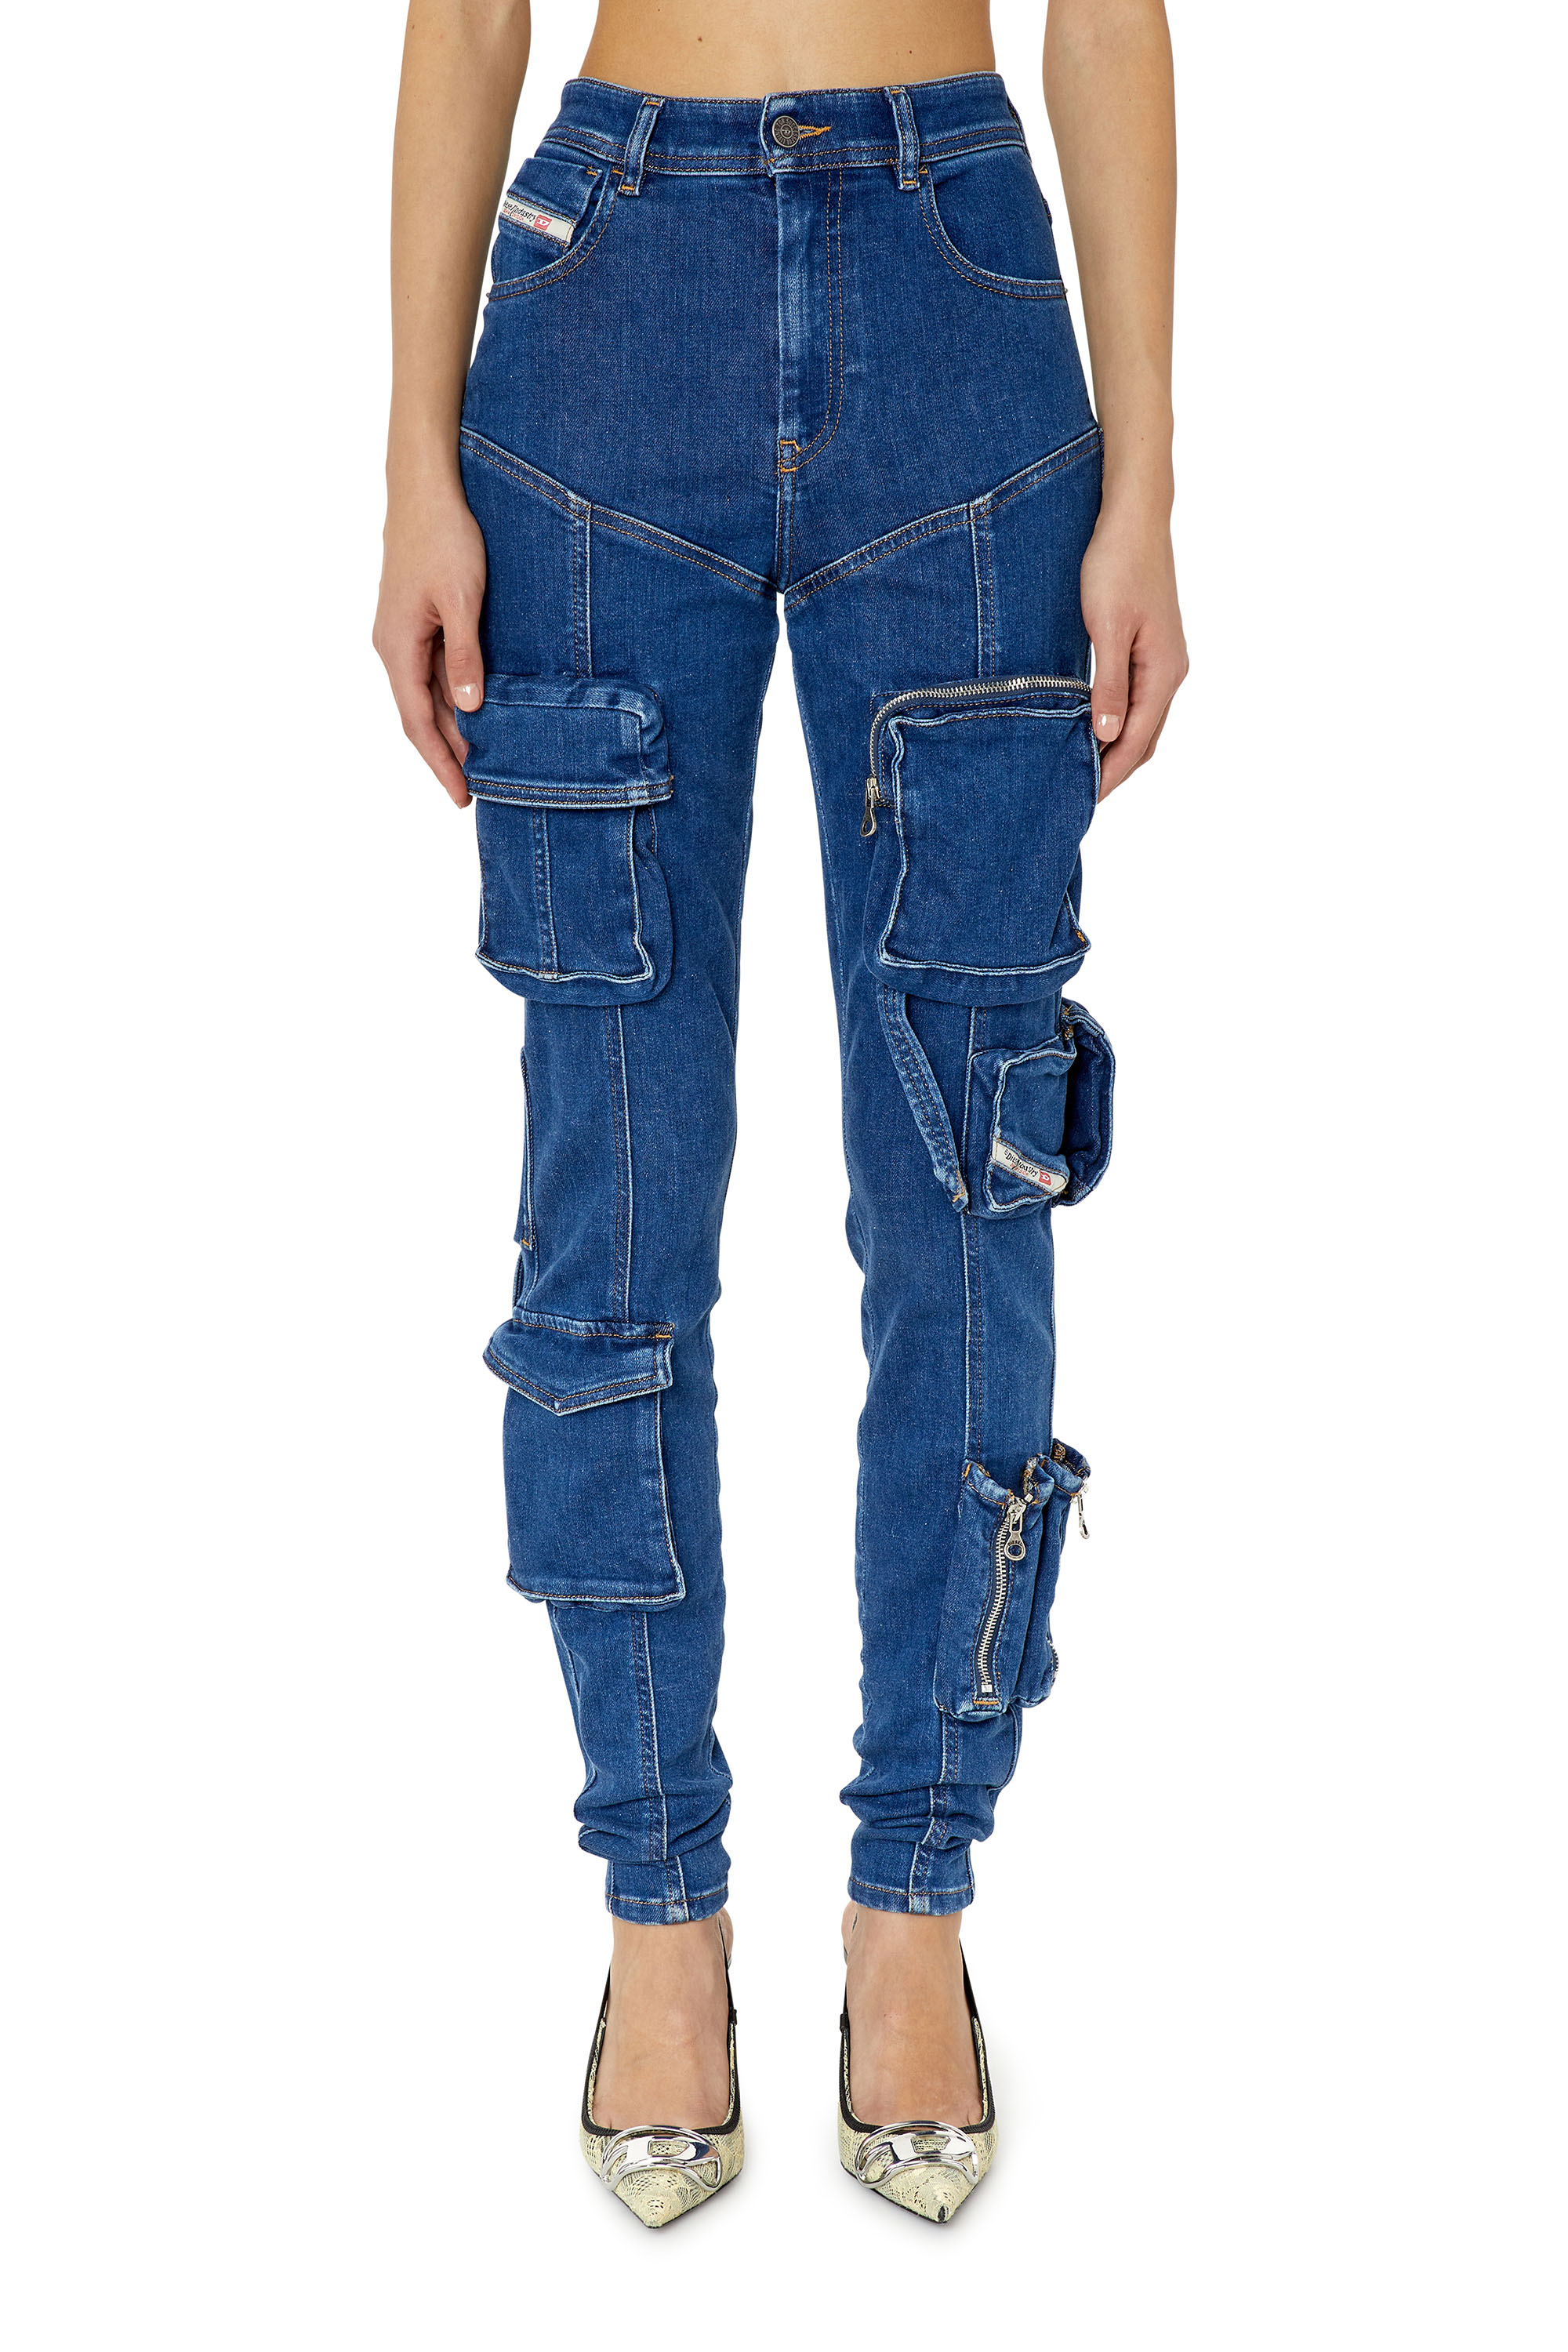 Diesel - Super skinny Jeans - 1984 Slandy high - Jeans - Donna - Blu